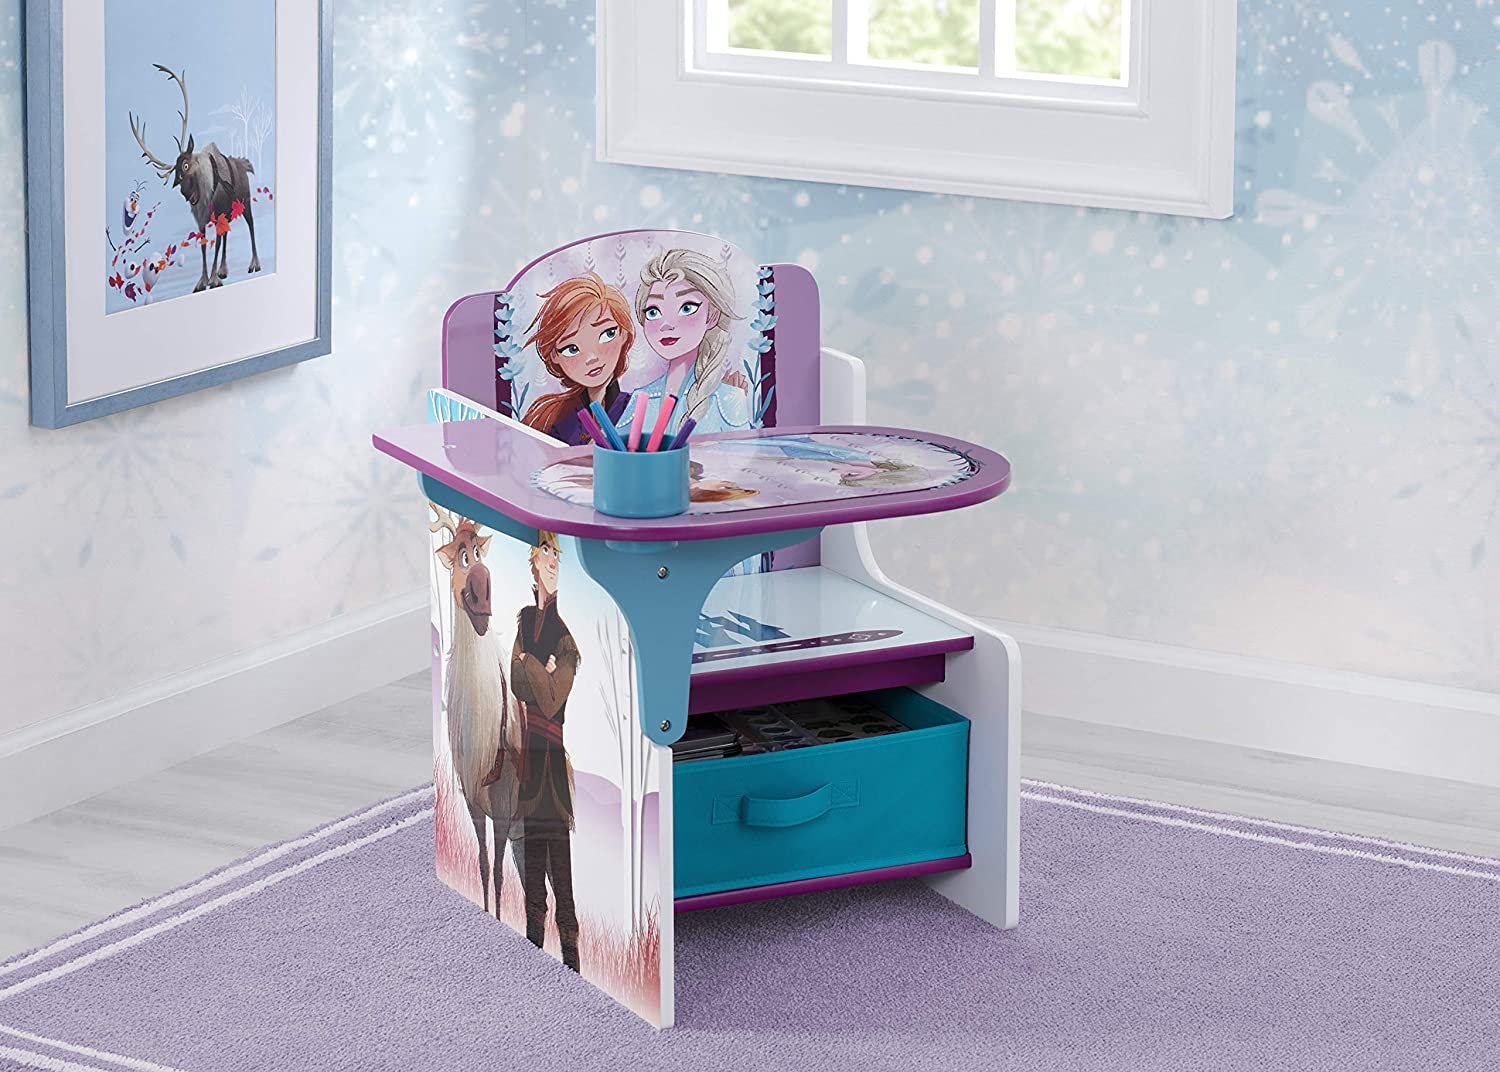 Delta Children Chair Desk with Storage Bin, Disney Frozen II